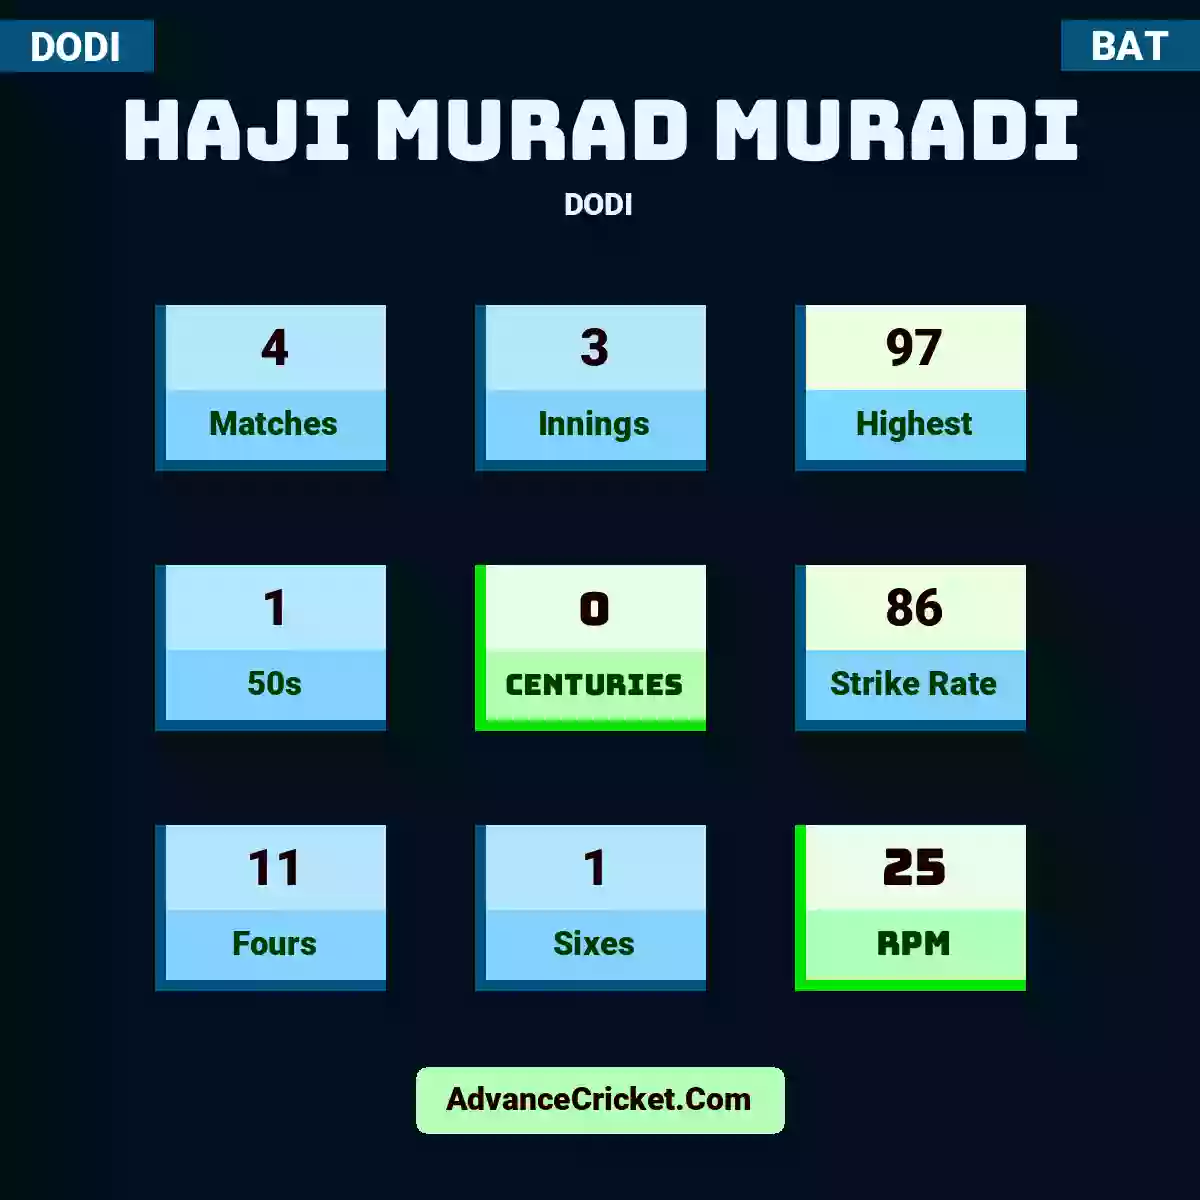 Haji Murad Muradi DODI , Haji Murad Muradi played 4 matches, scored 97 runs as highest, 1 half-centuries, and 0 centuries, with a strike rate of 86. H.Murad.Muradi hit 11 fours and 1 sixes, with an RPM of 25.